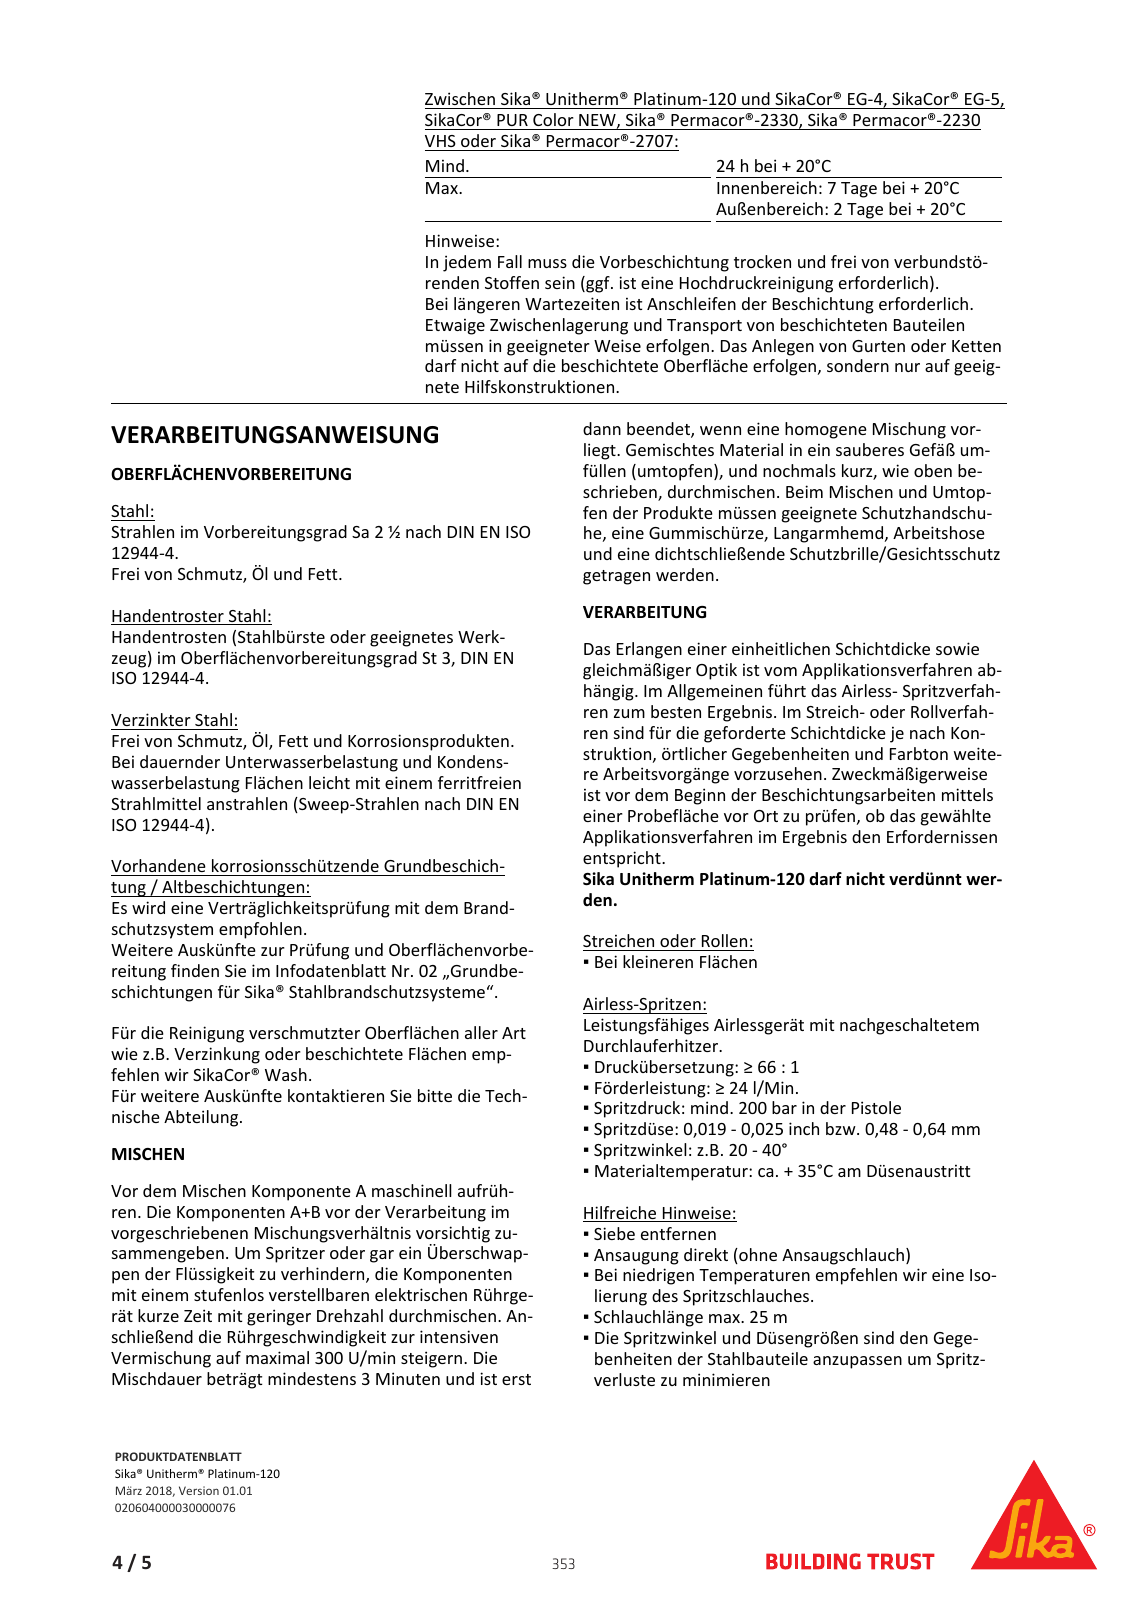 Vorschau Sika_Korrosionsschutz_und_Brandschutz_Band1 Seite 353